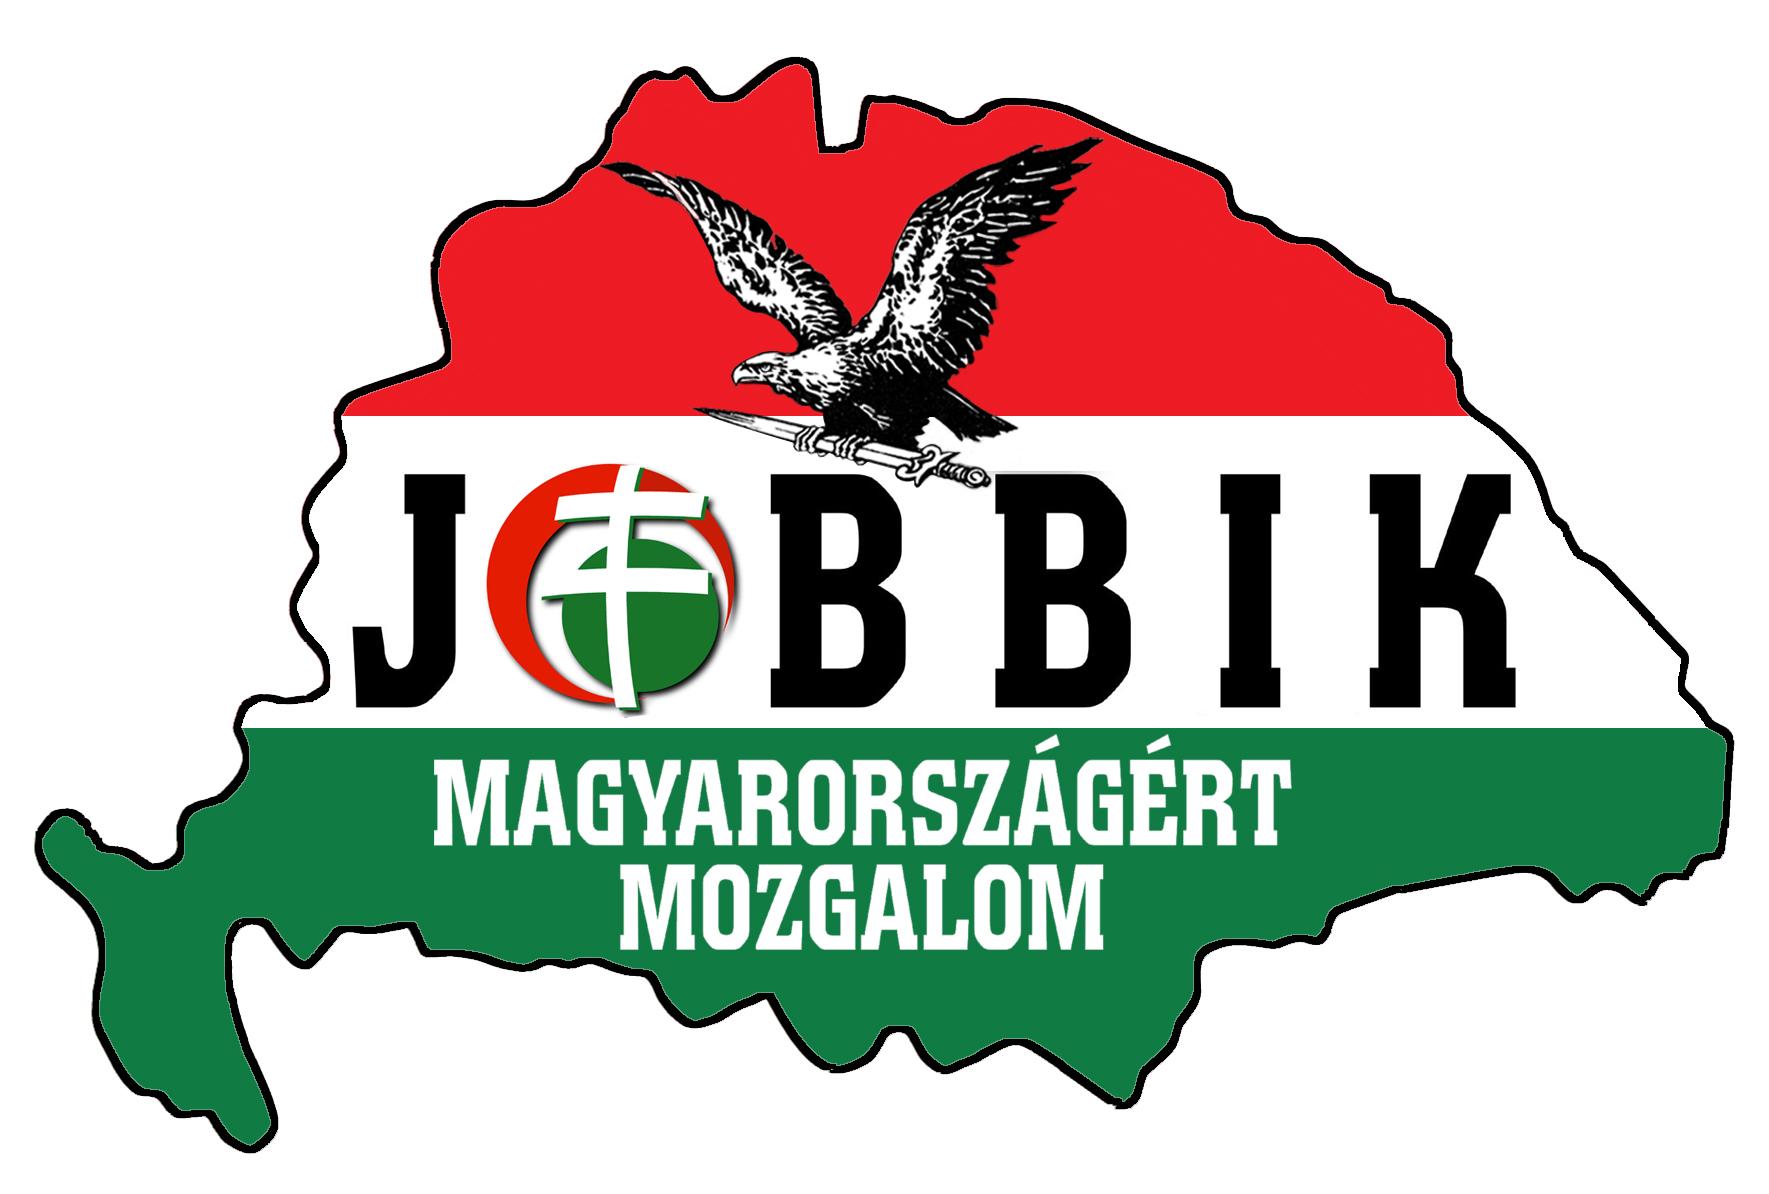 Tapolcai választás - A Jobbik visszaélést gyanít egy ingatlancsere mögött